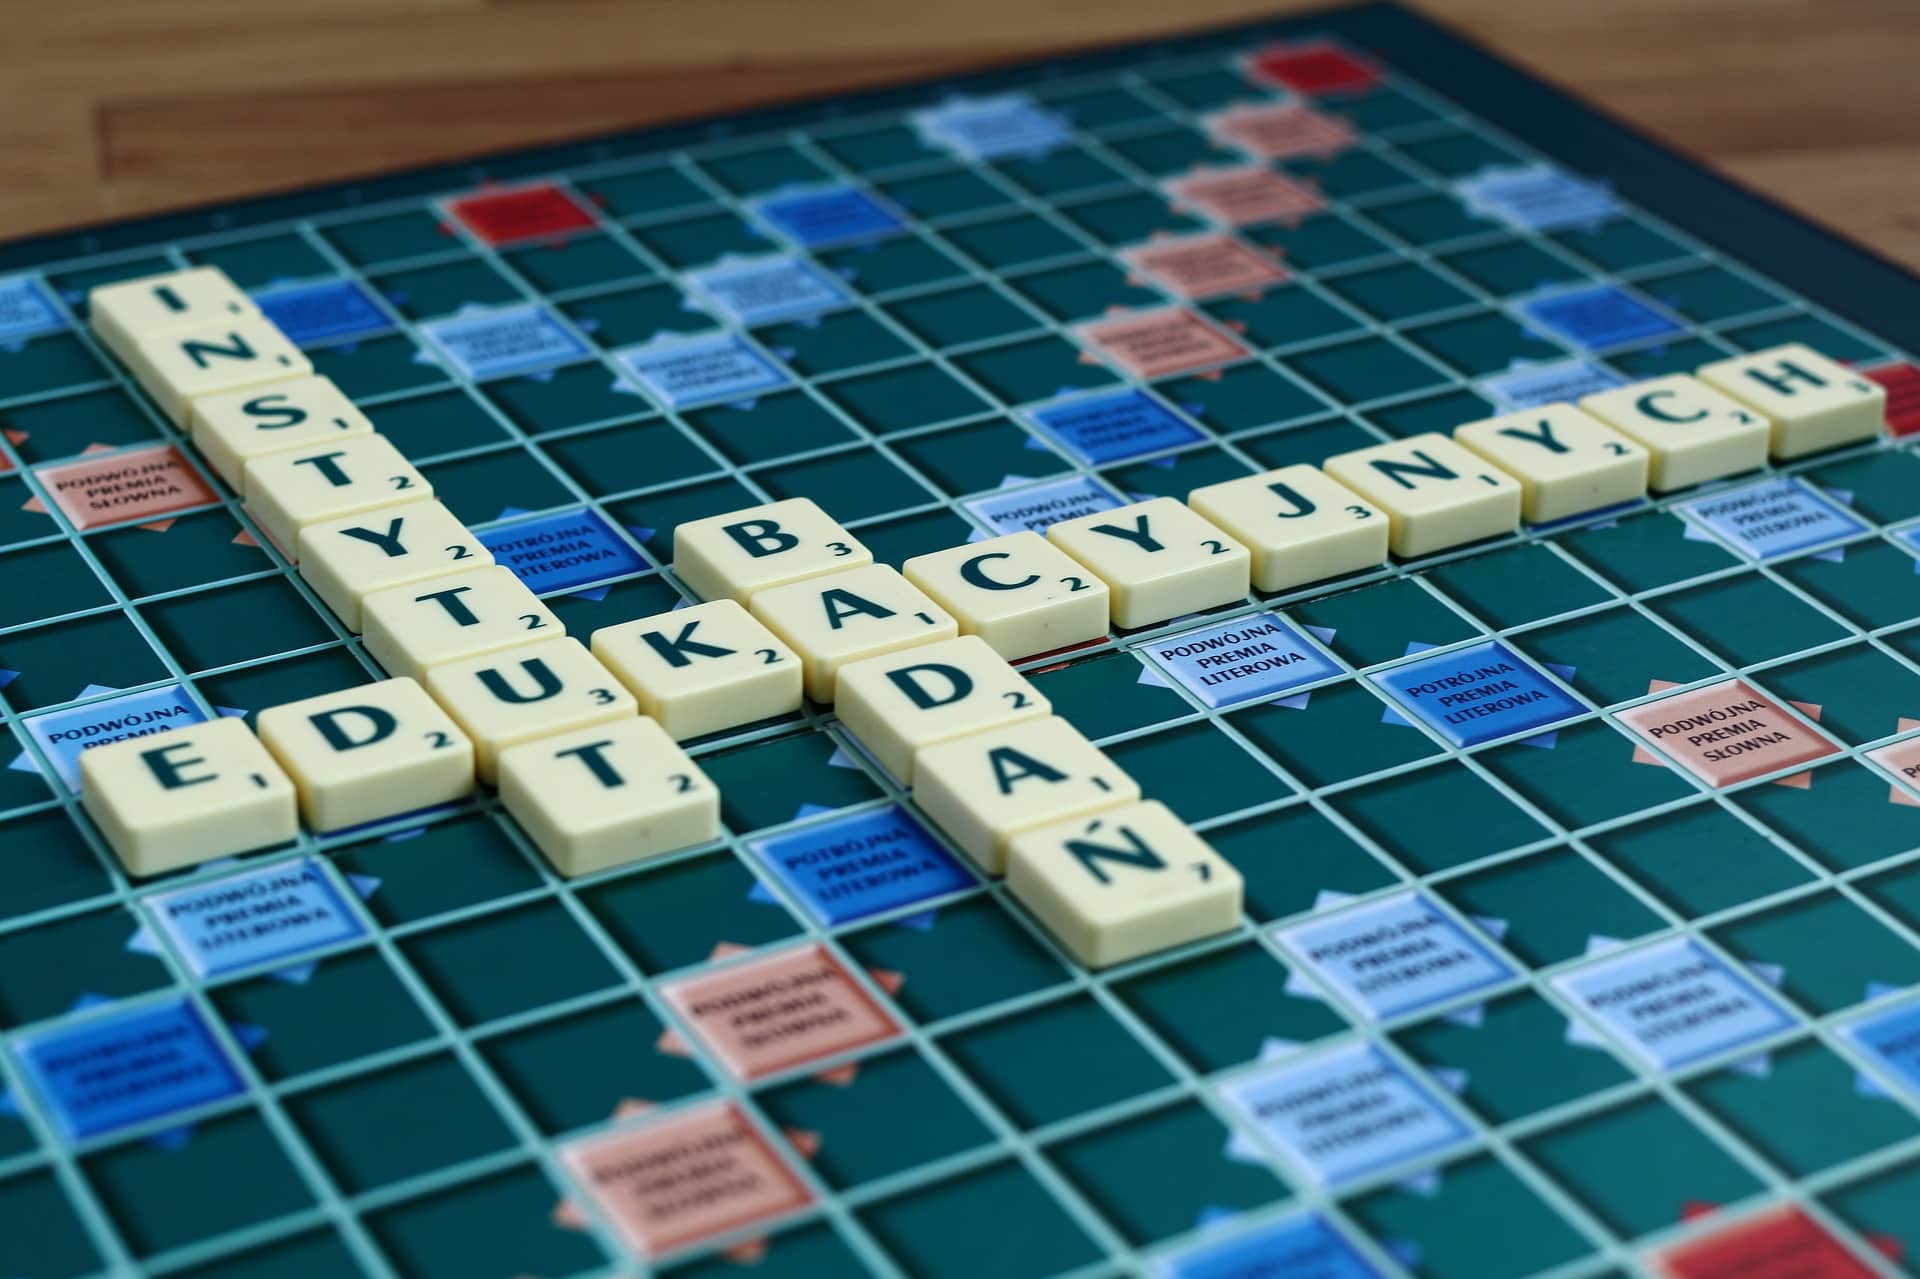 Triche Scraable : il existe un site pour tricher au Scrabble !